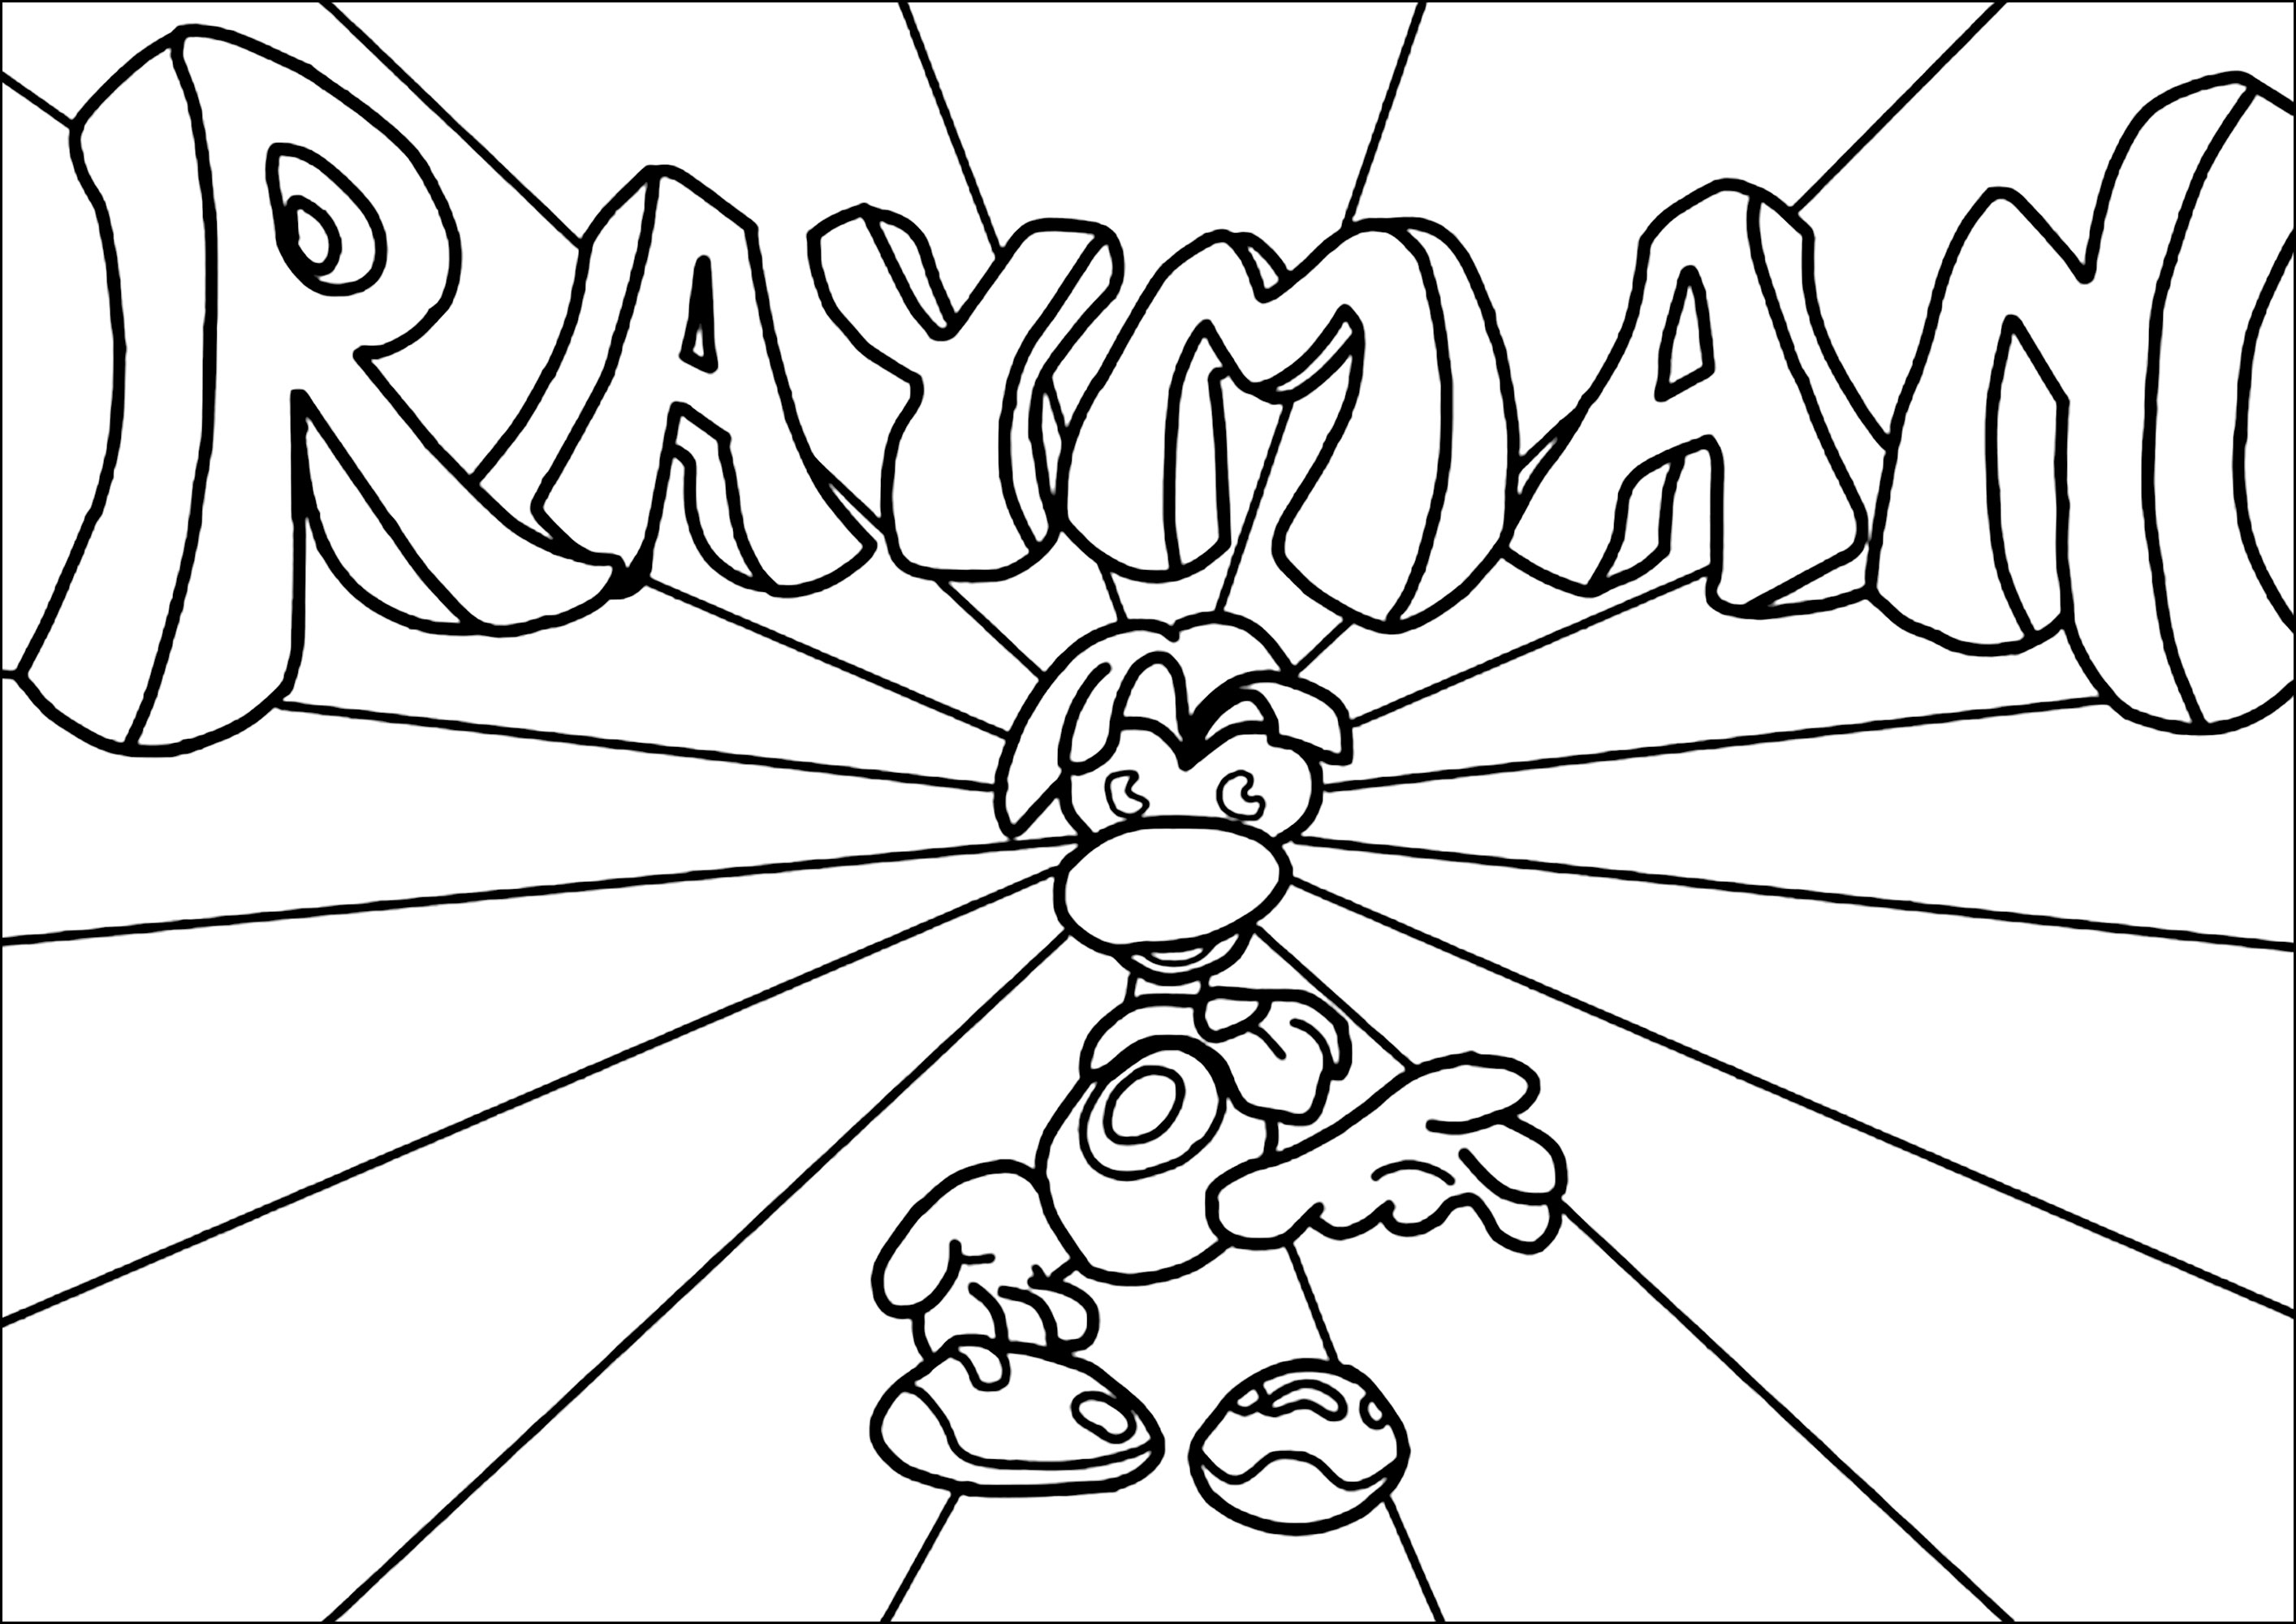 Personnage Rayman avec le logo en arrière-plan